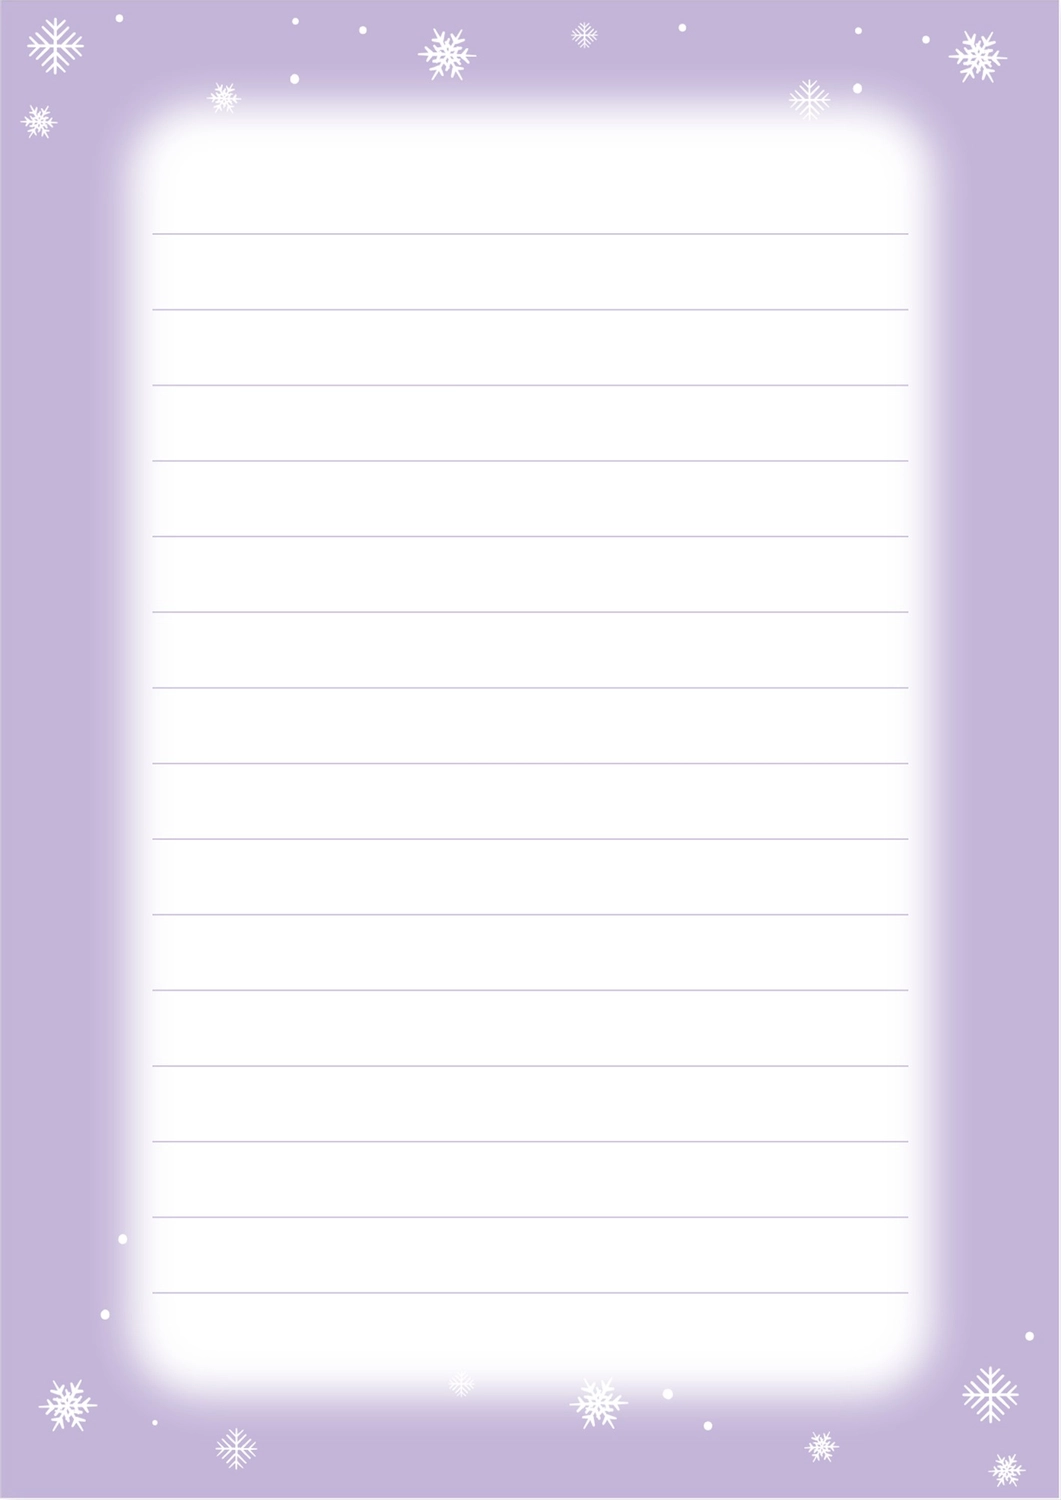 便箋（雪の結晶薄紫色フレーム）, 簡單的, 清爽, 圖片明信片, 便條紙 模板